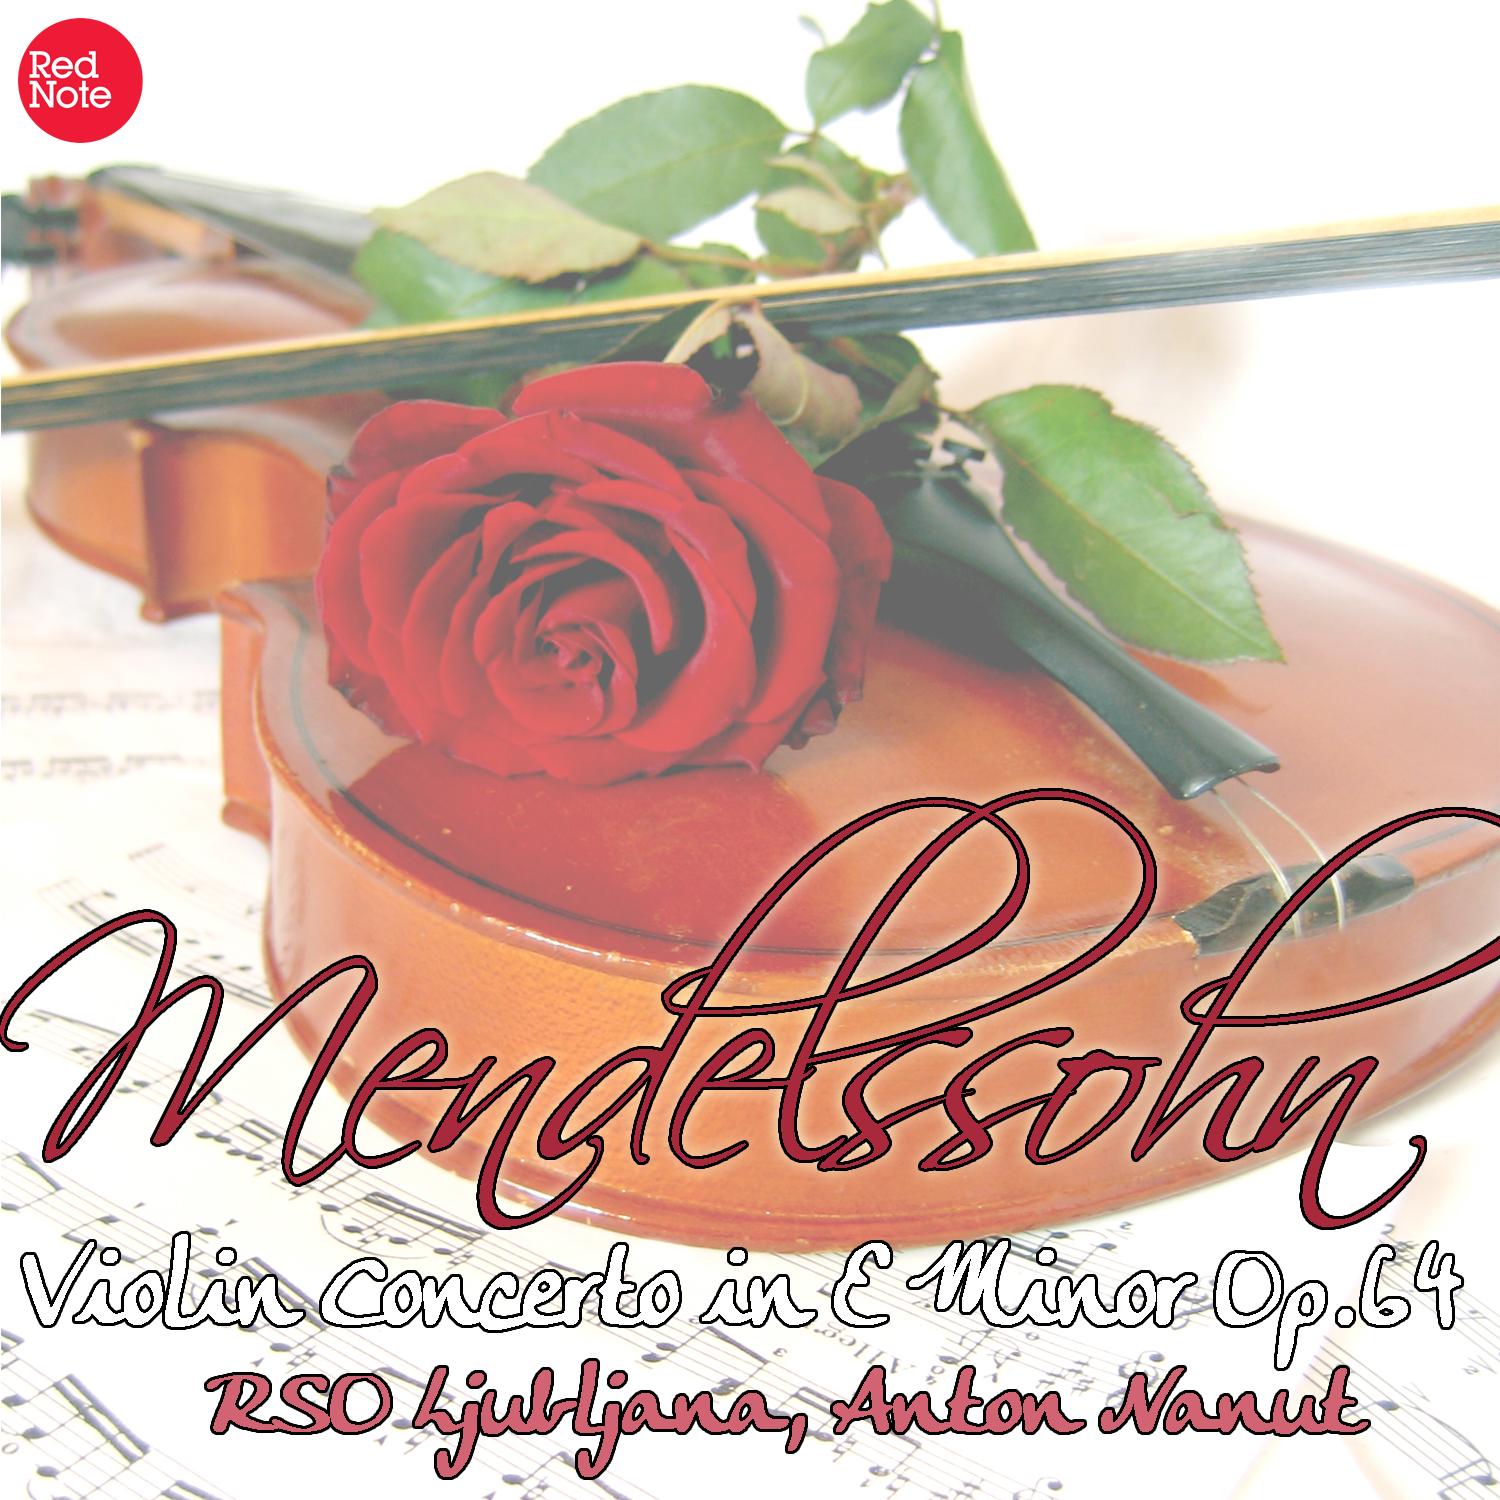 Violin Concerto in C Major, Op.64: II. Andante